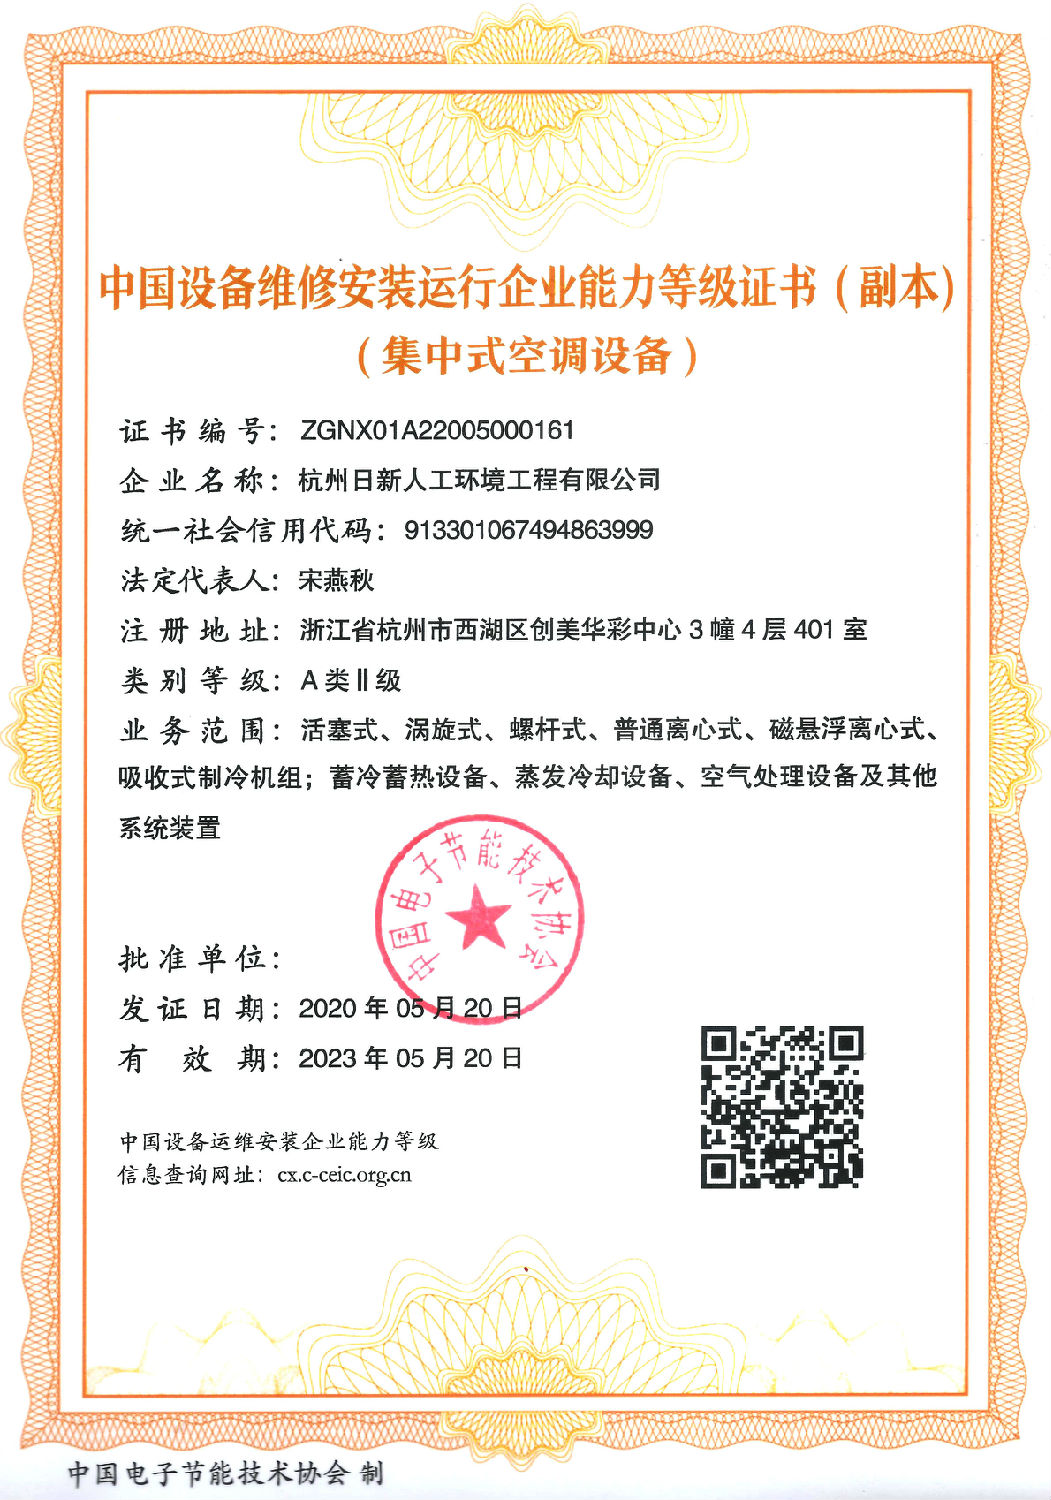 集中式空调设备 中国设备维修安装运行企业能力登记证书.jpg